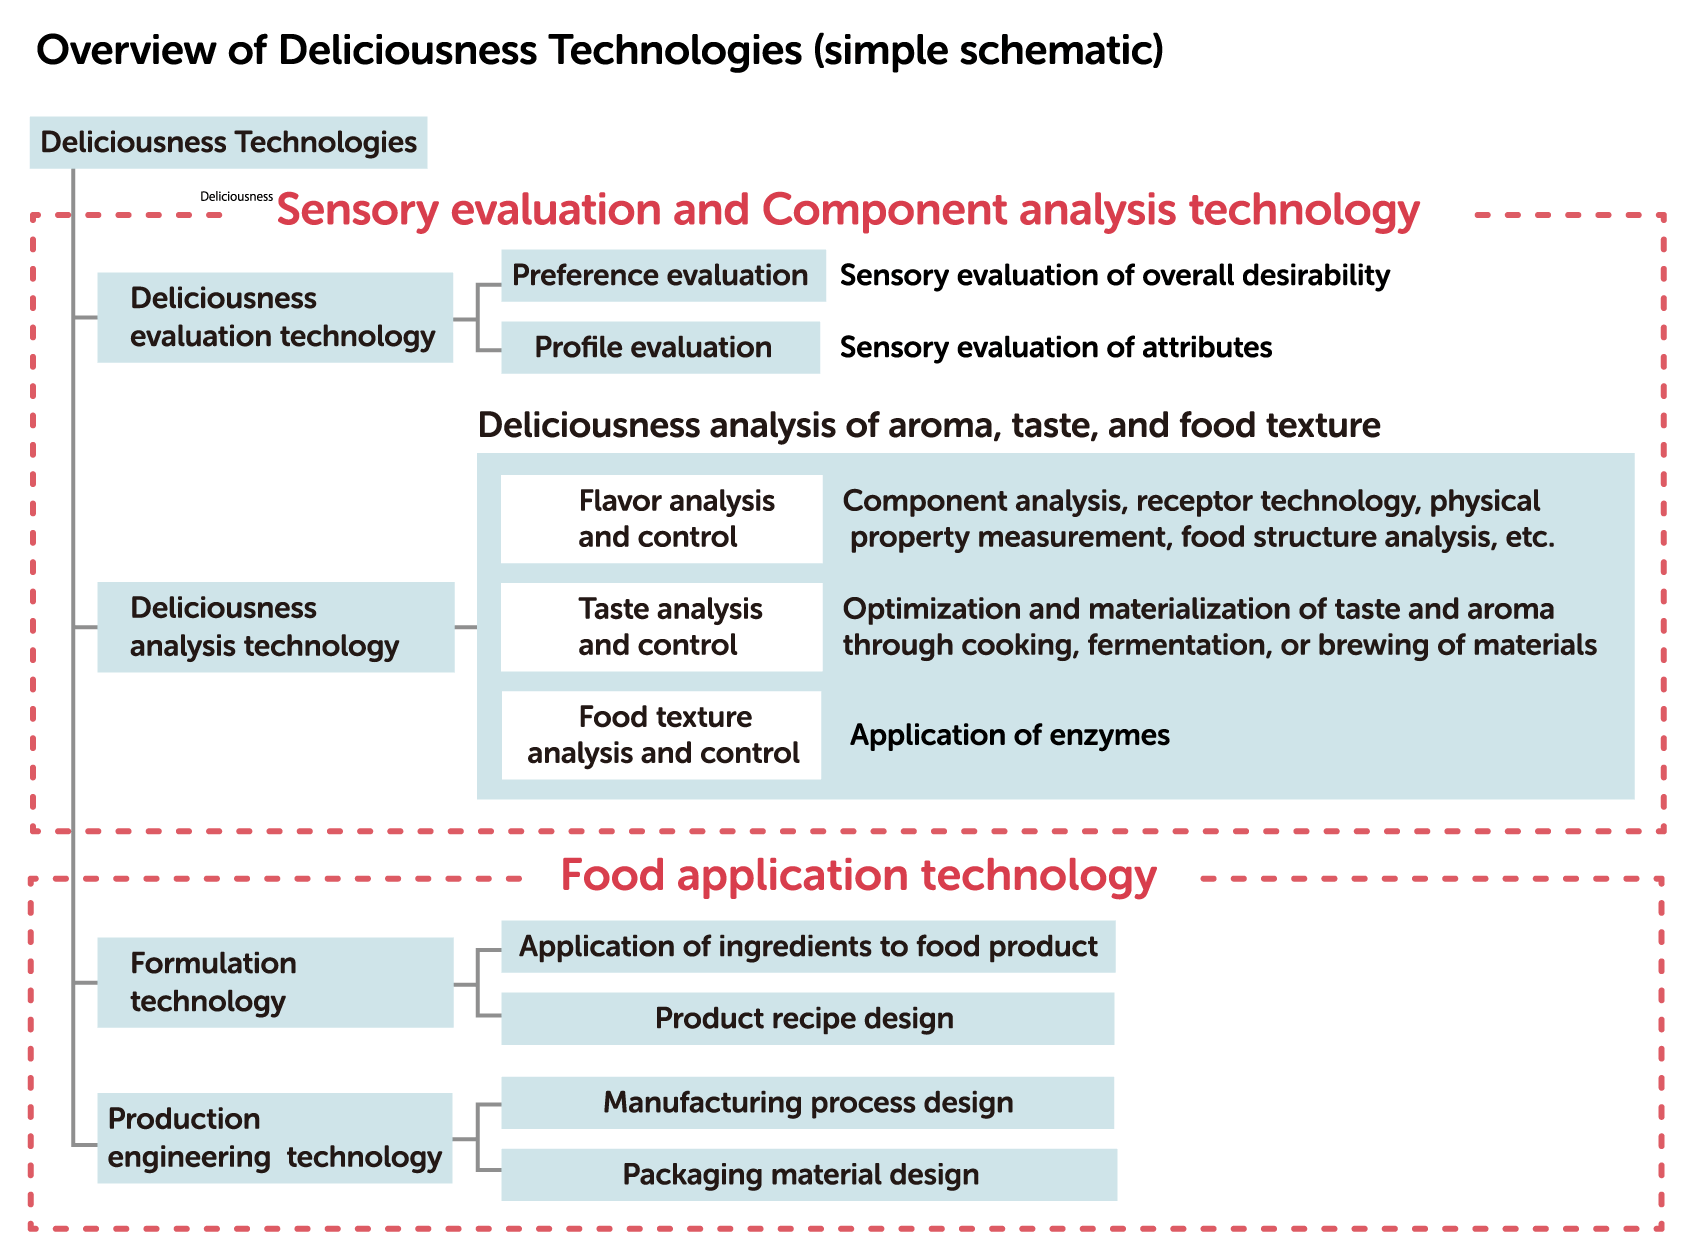 Présentation de Deliciousness Technologies (schéma simple)